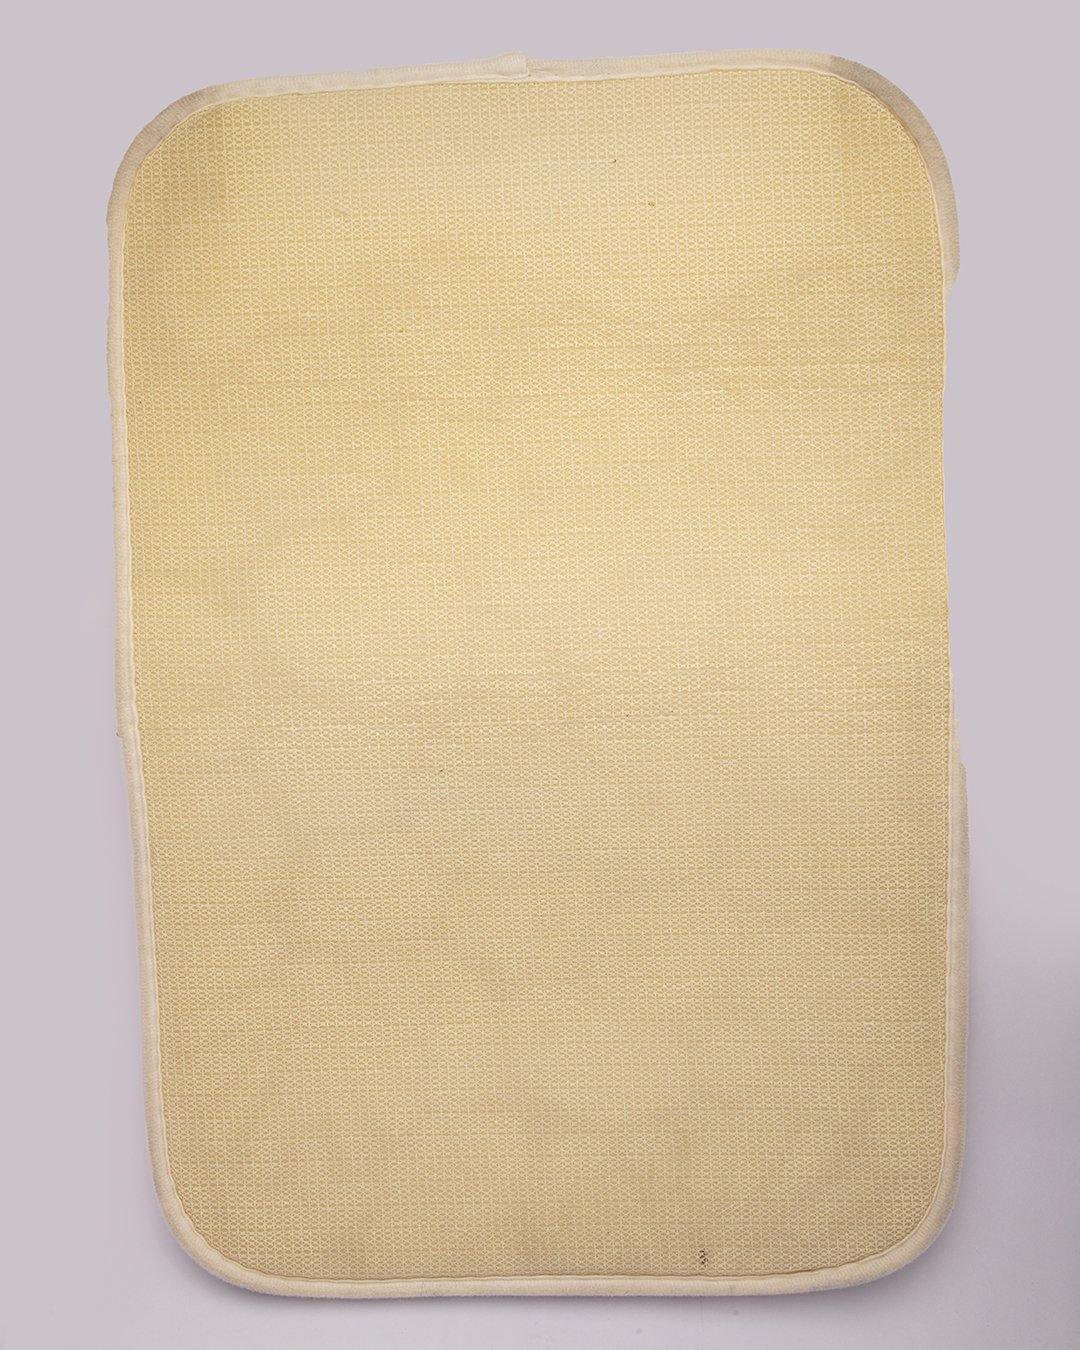 Indoor Mat, Doormat, Off White, Microfiber - MARKET 99